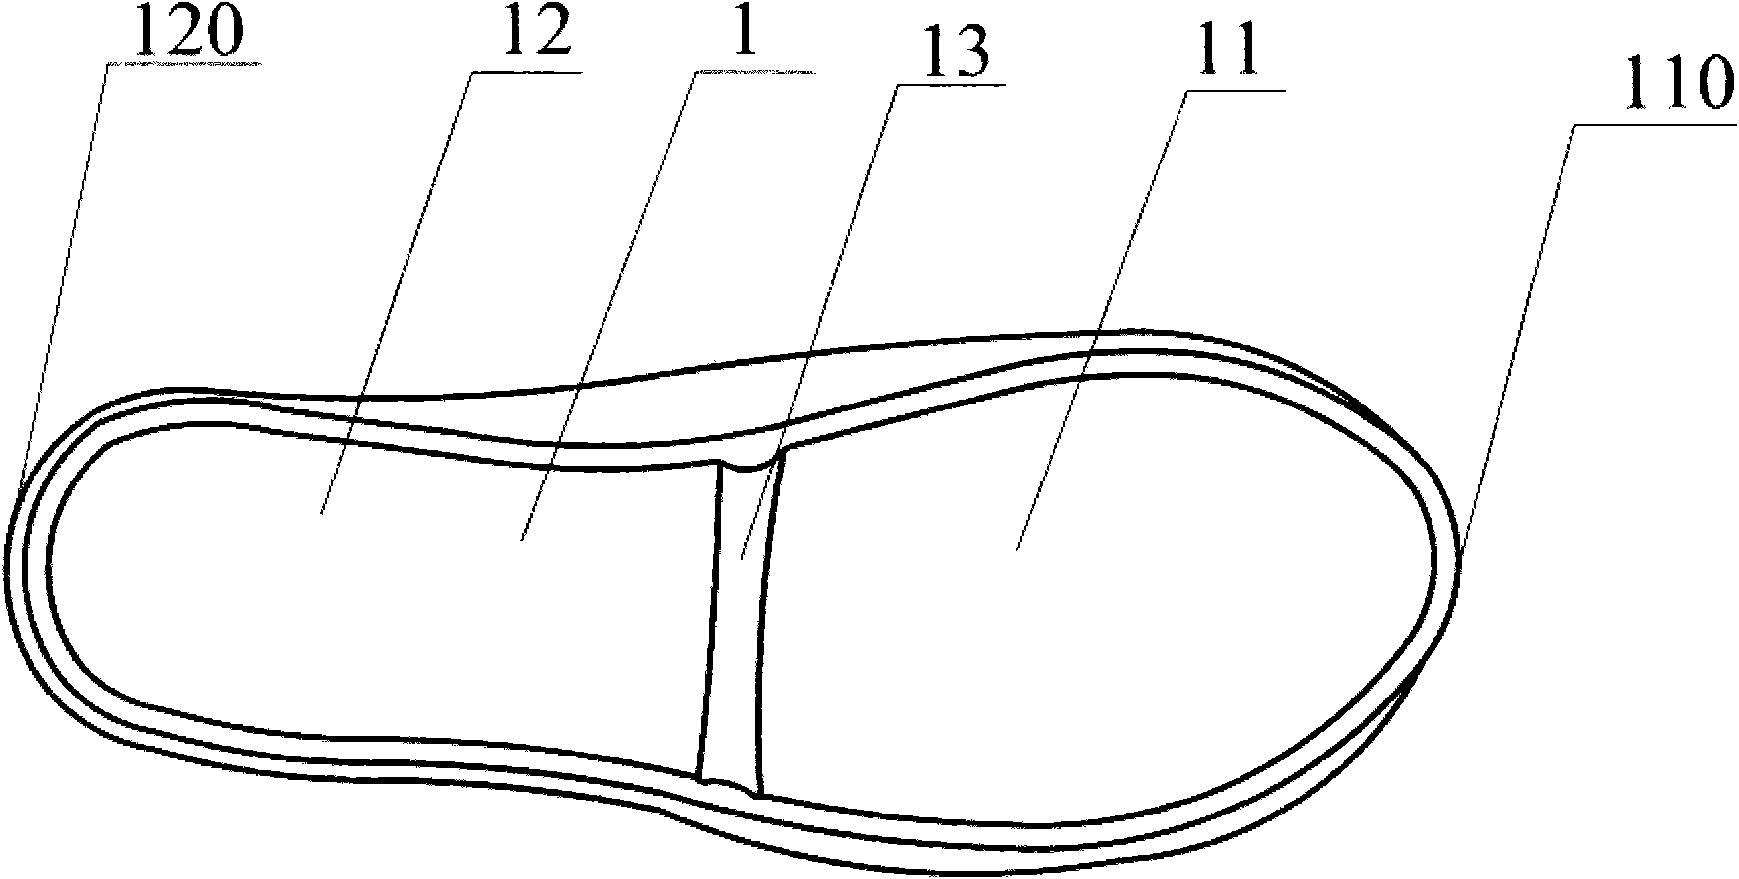 Fold-up shoe